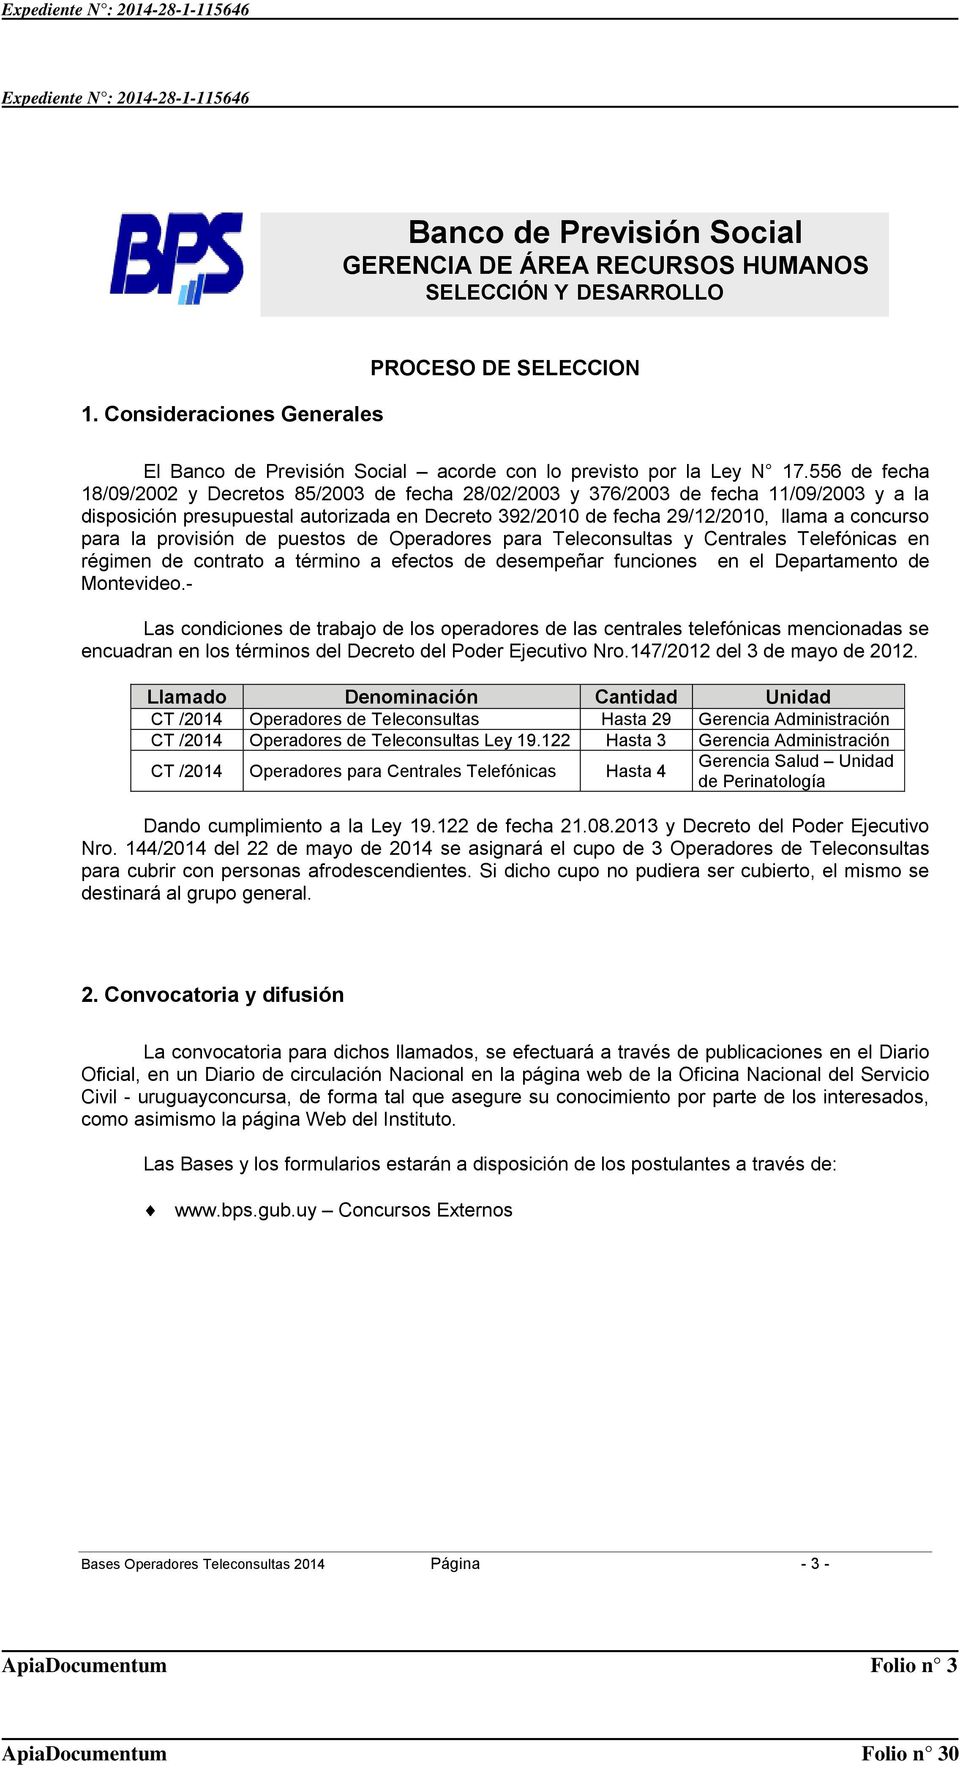 la provisión de puestos de Operadores para Teleconsultas y Centrales Telefónicas en régimen de contrato a término a efectos de desempeñar funciones en el Departamento de Montevideo.